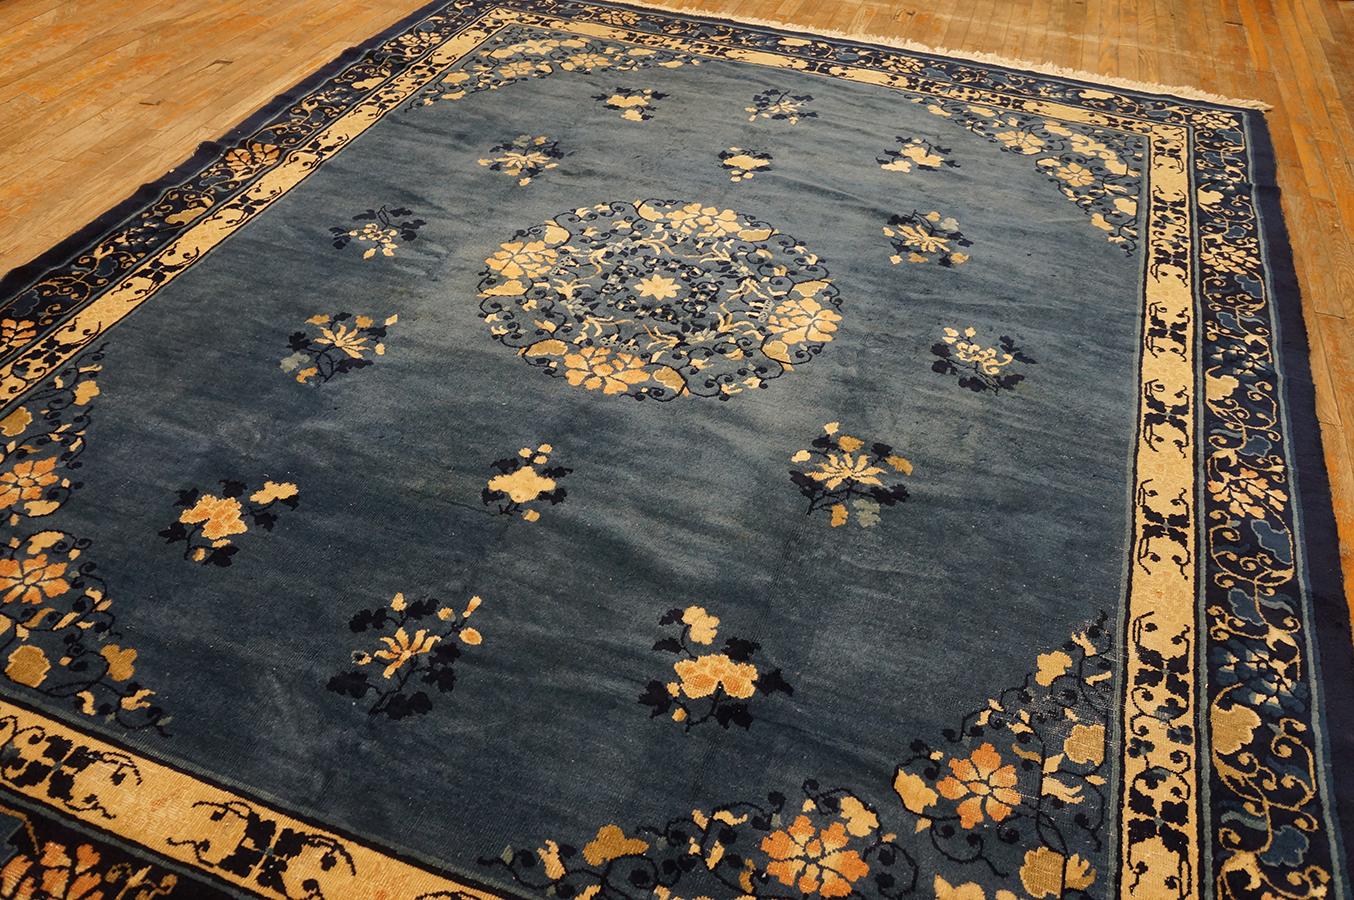 Antique Chinese peking rug, size: 7' 9'' x 9' 9''.